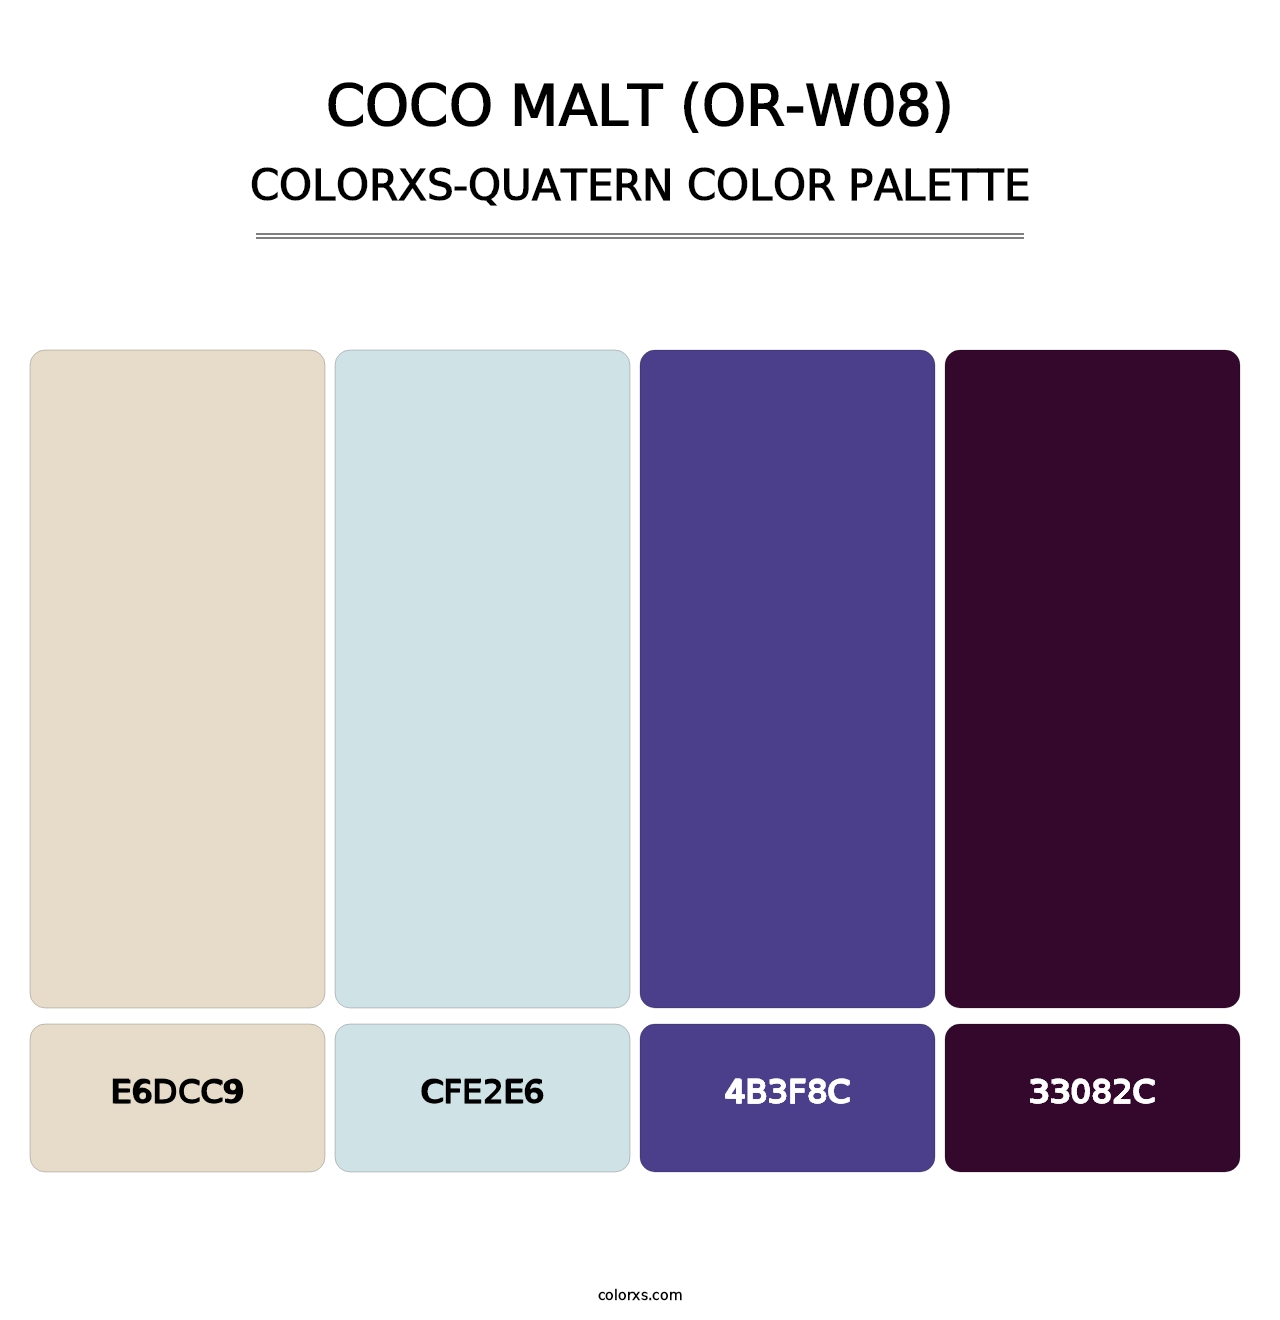 Coco Malt (OR-W08) - Colorxs Quatern Palette